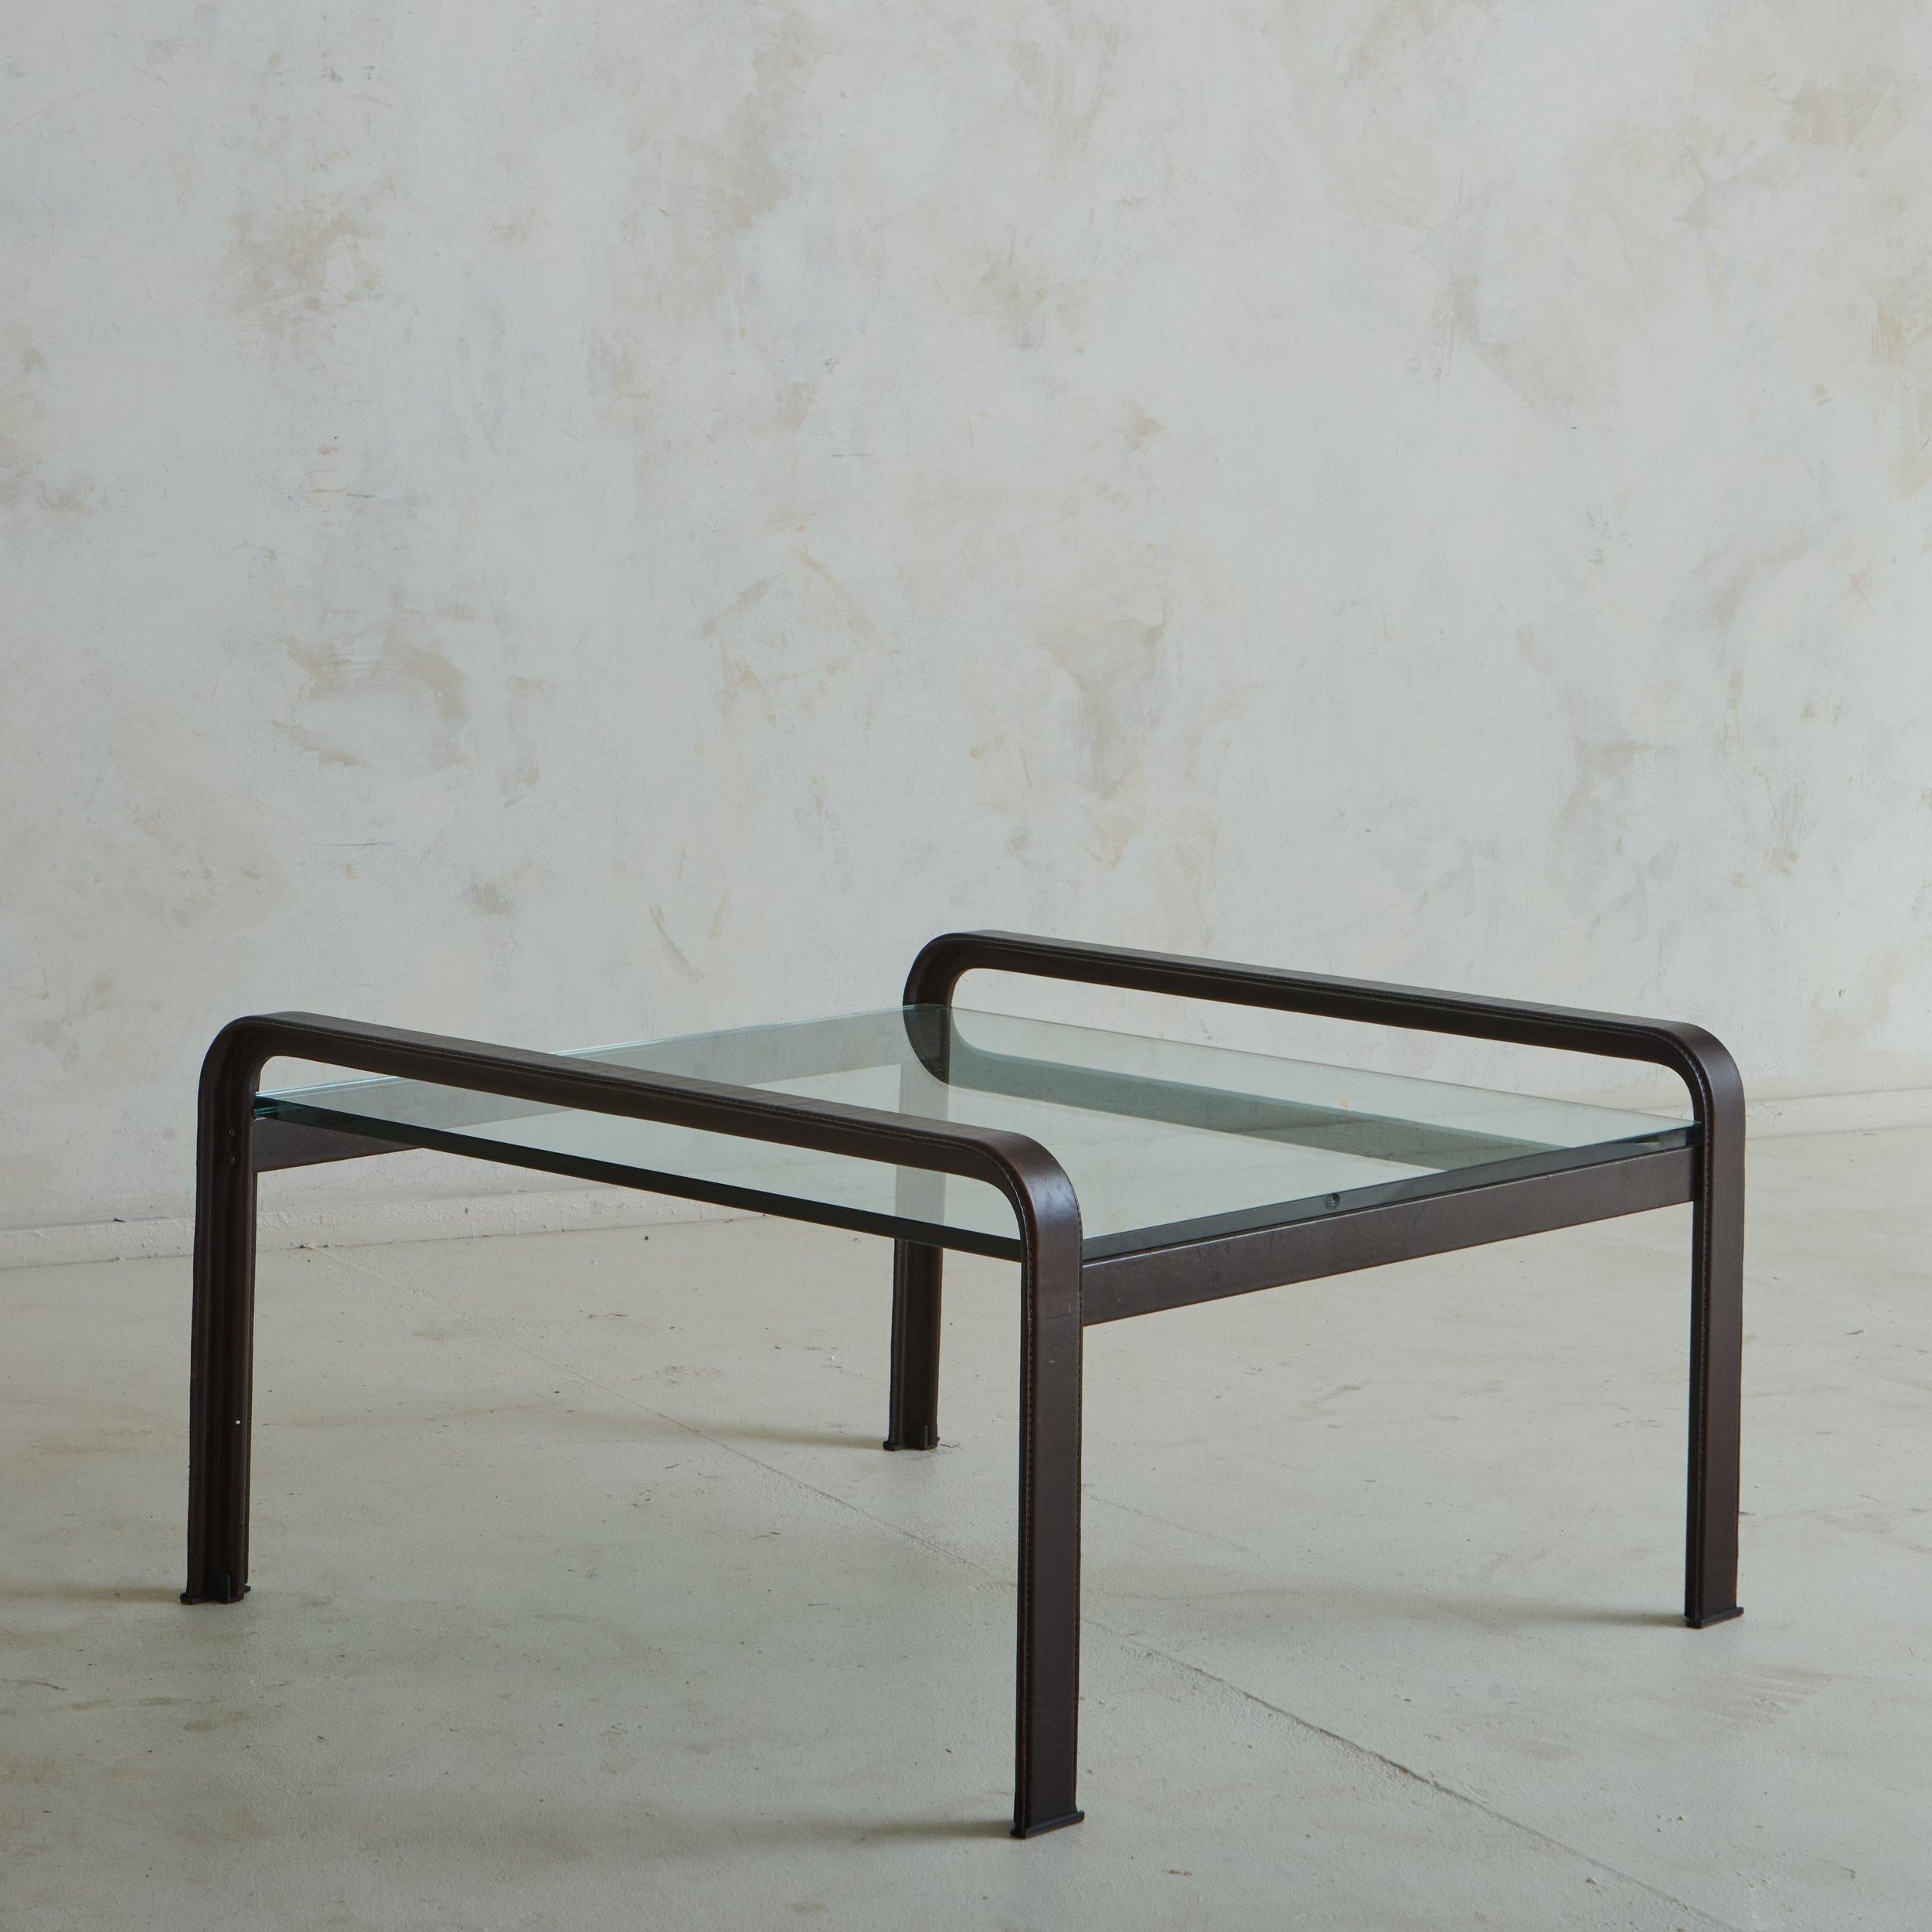 Table d'appoint italienne du milieu du siècle, conçue par Tito Agnoli pour Matteo Grassi dans les années 1970. Cette table classique est dotée d'une structure en acier habillée de cuir marron chocolat avec des détails en surpiqûres. Les côtés du